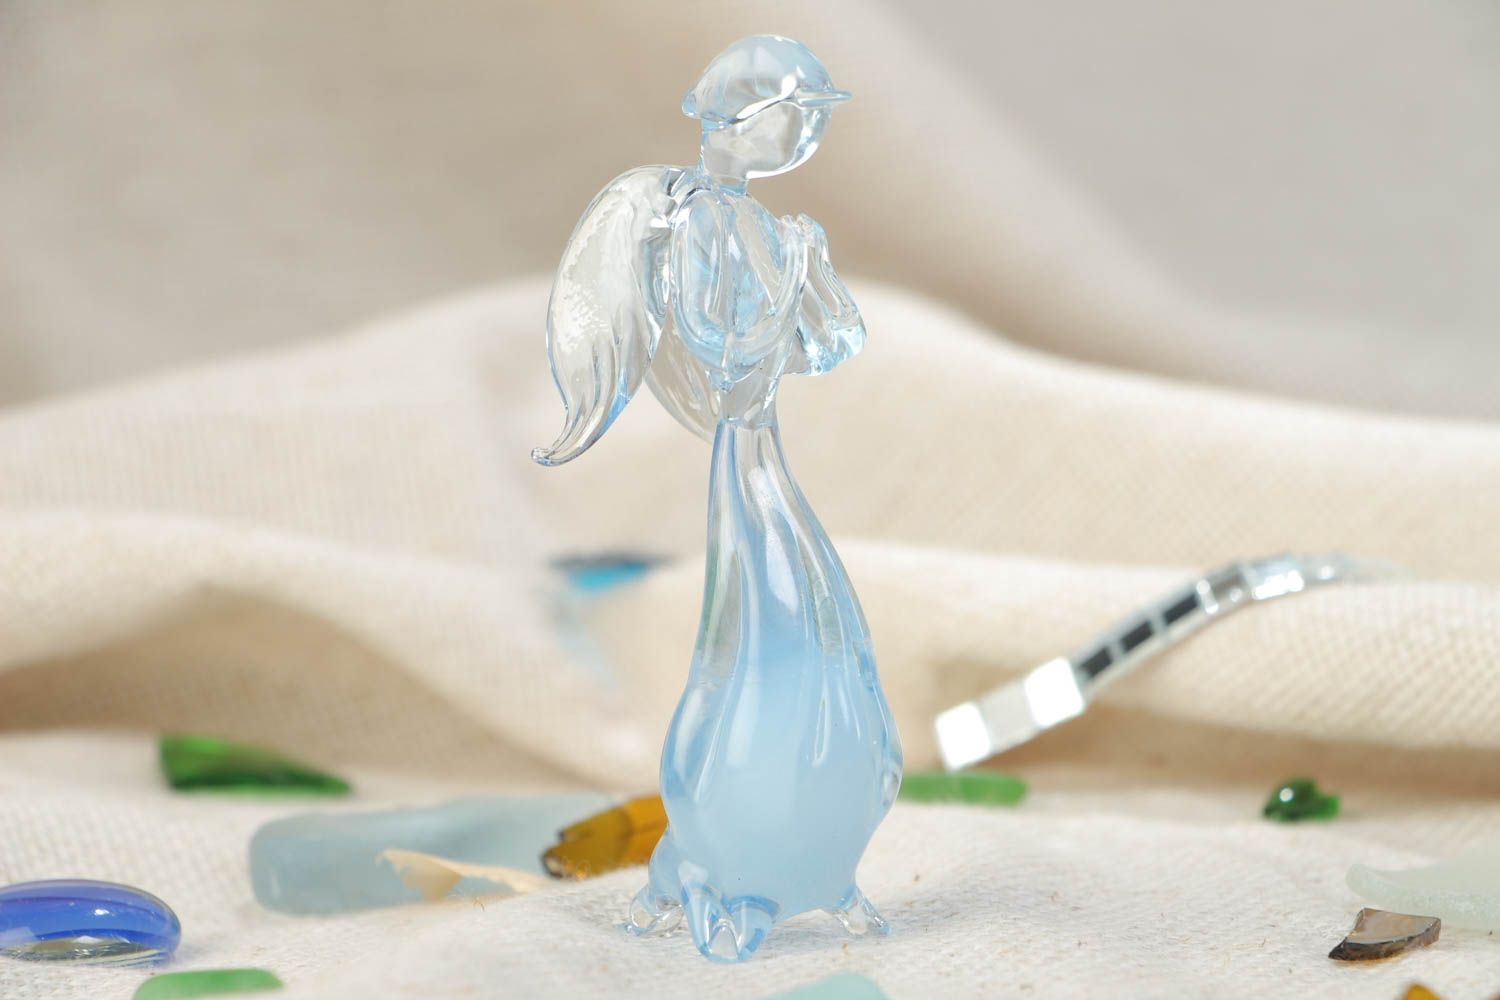 Красивая маленькая фигурка из стекла Ангел в технике лэмпворк ручной работы фото 1